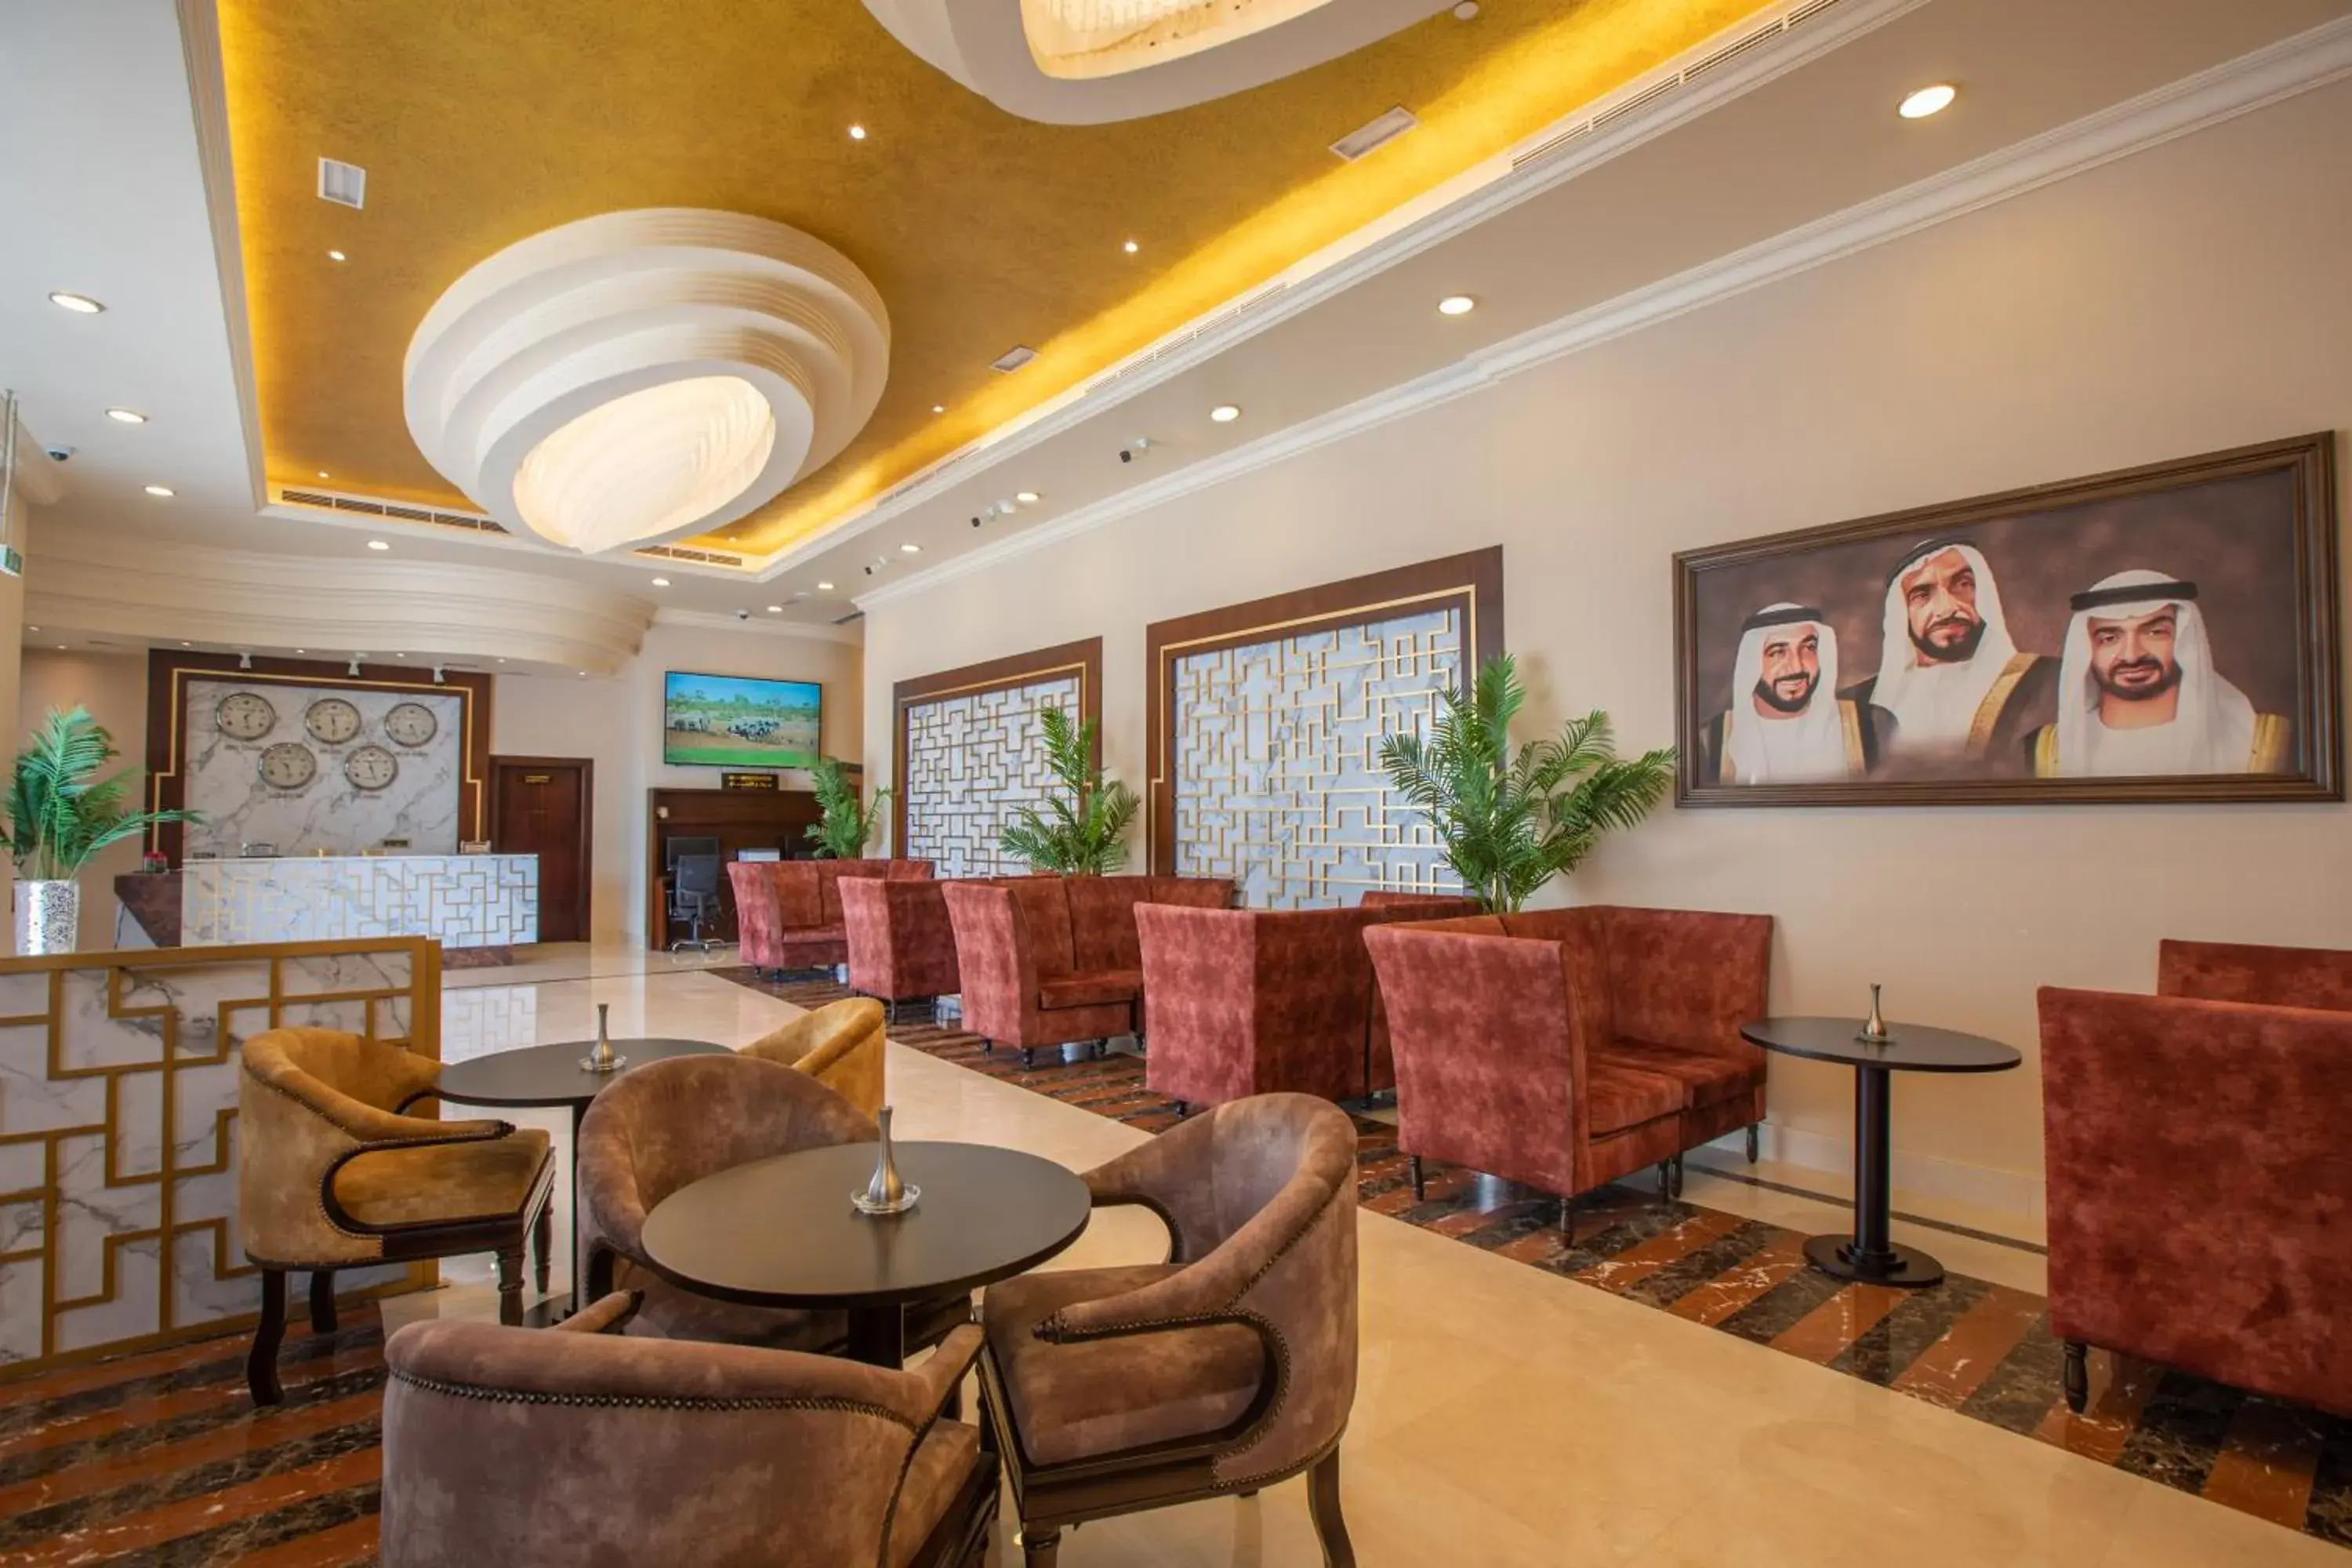 Lobby or reception in Grand Villaggio Hotel Abu Dhabi